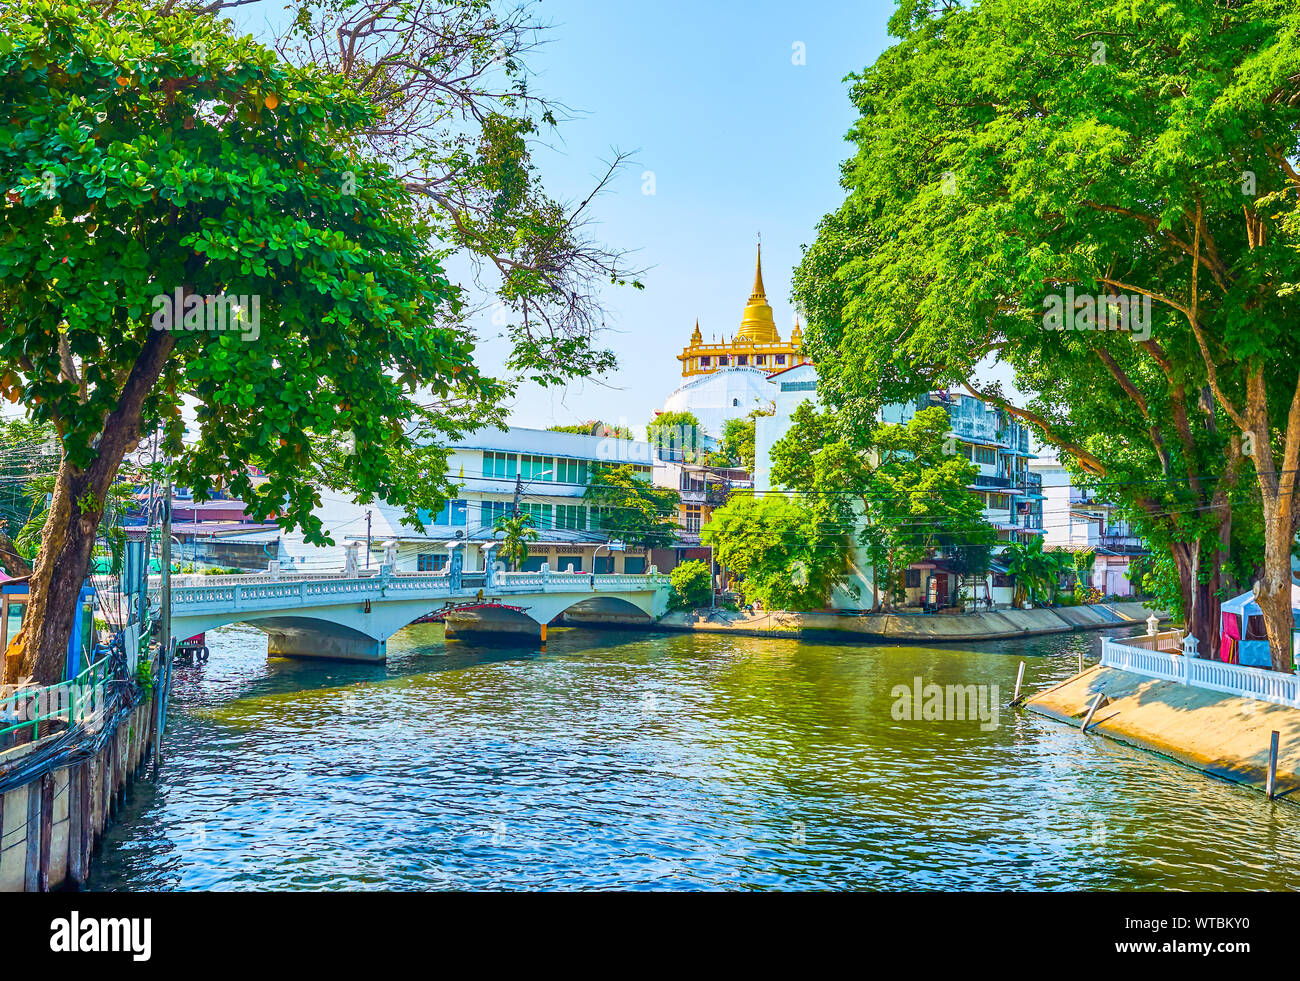 La belle vue sur la confluence de deux khlongs (canaux) dans quartier central et magnifique Golden Mount Temple sur l'arrière-plan, Bangkok, Thaïlande Banque D'Images